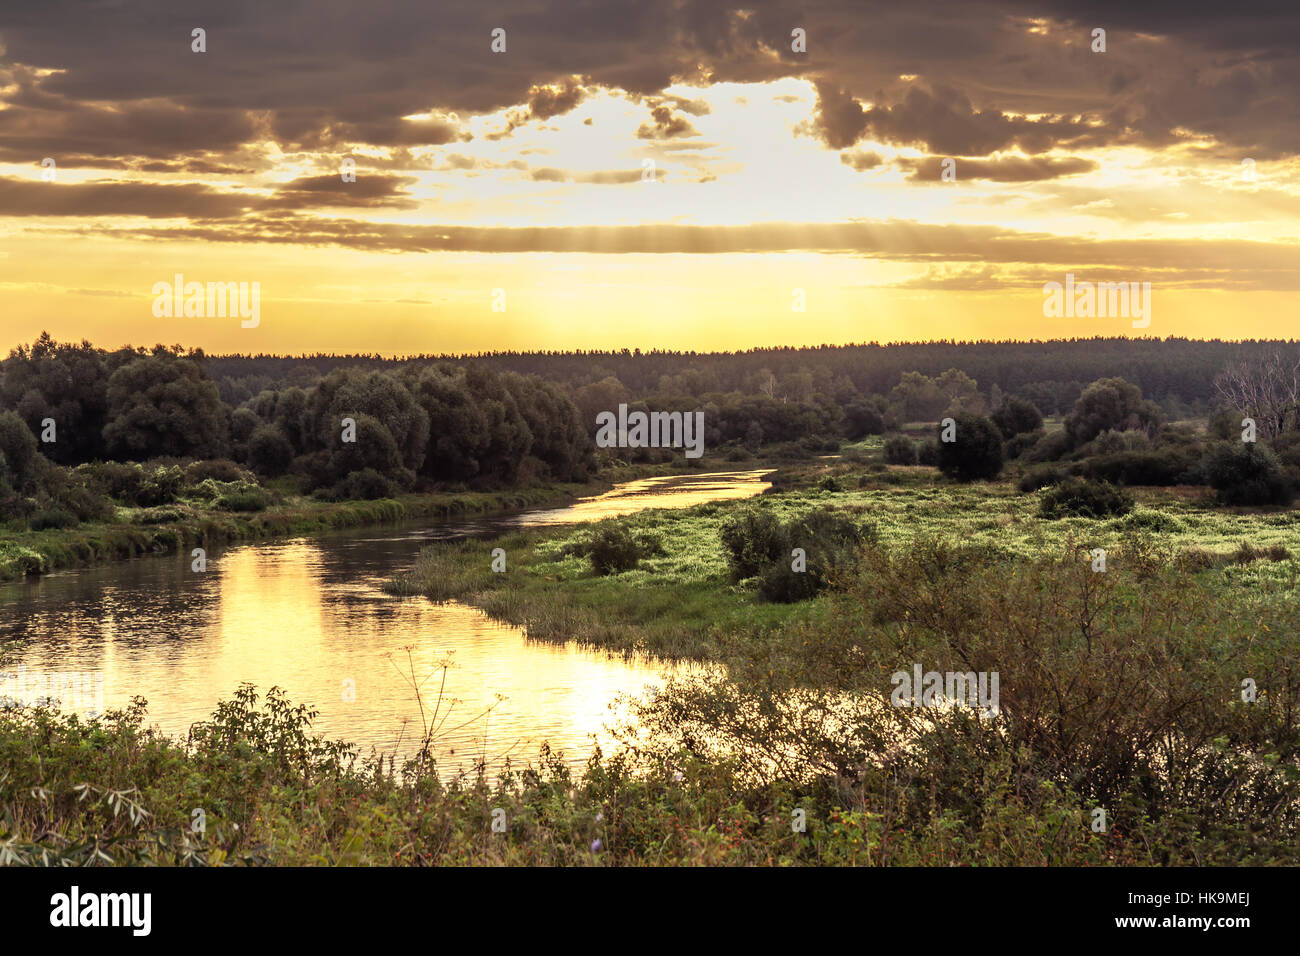 Sunrise dynamique avec de beaux paysage rural à river bank avec moody sky et de la lumière du soleil Banque D'Images